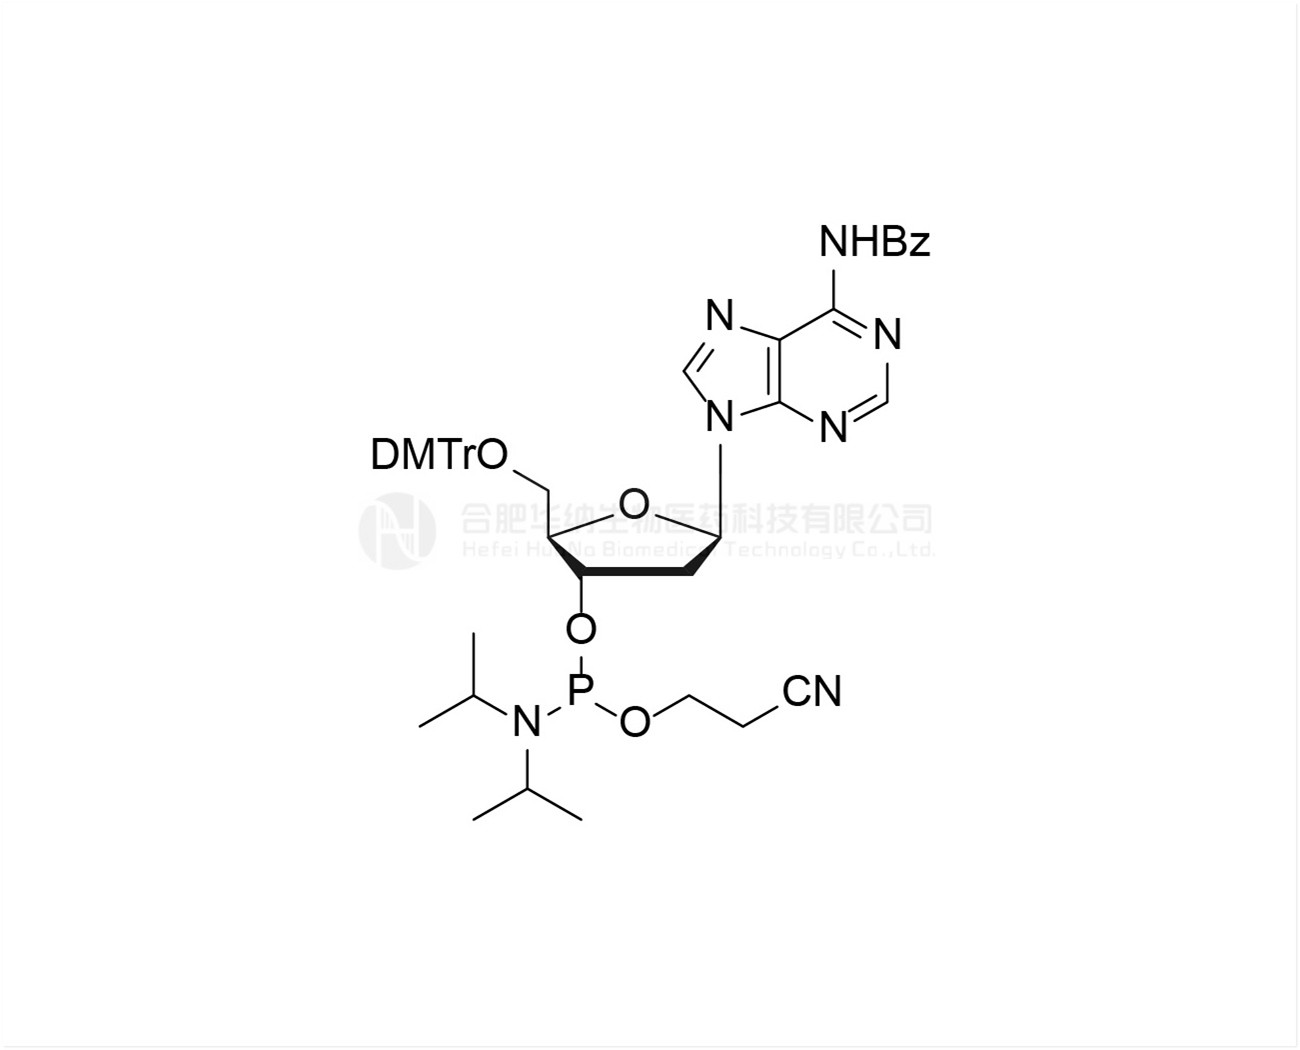 DMTr-dA(Bz)-3'-CE-Phosphoramidite